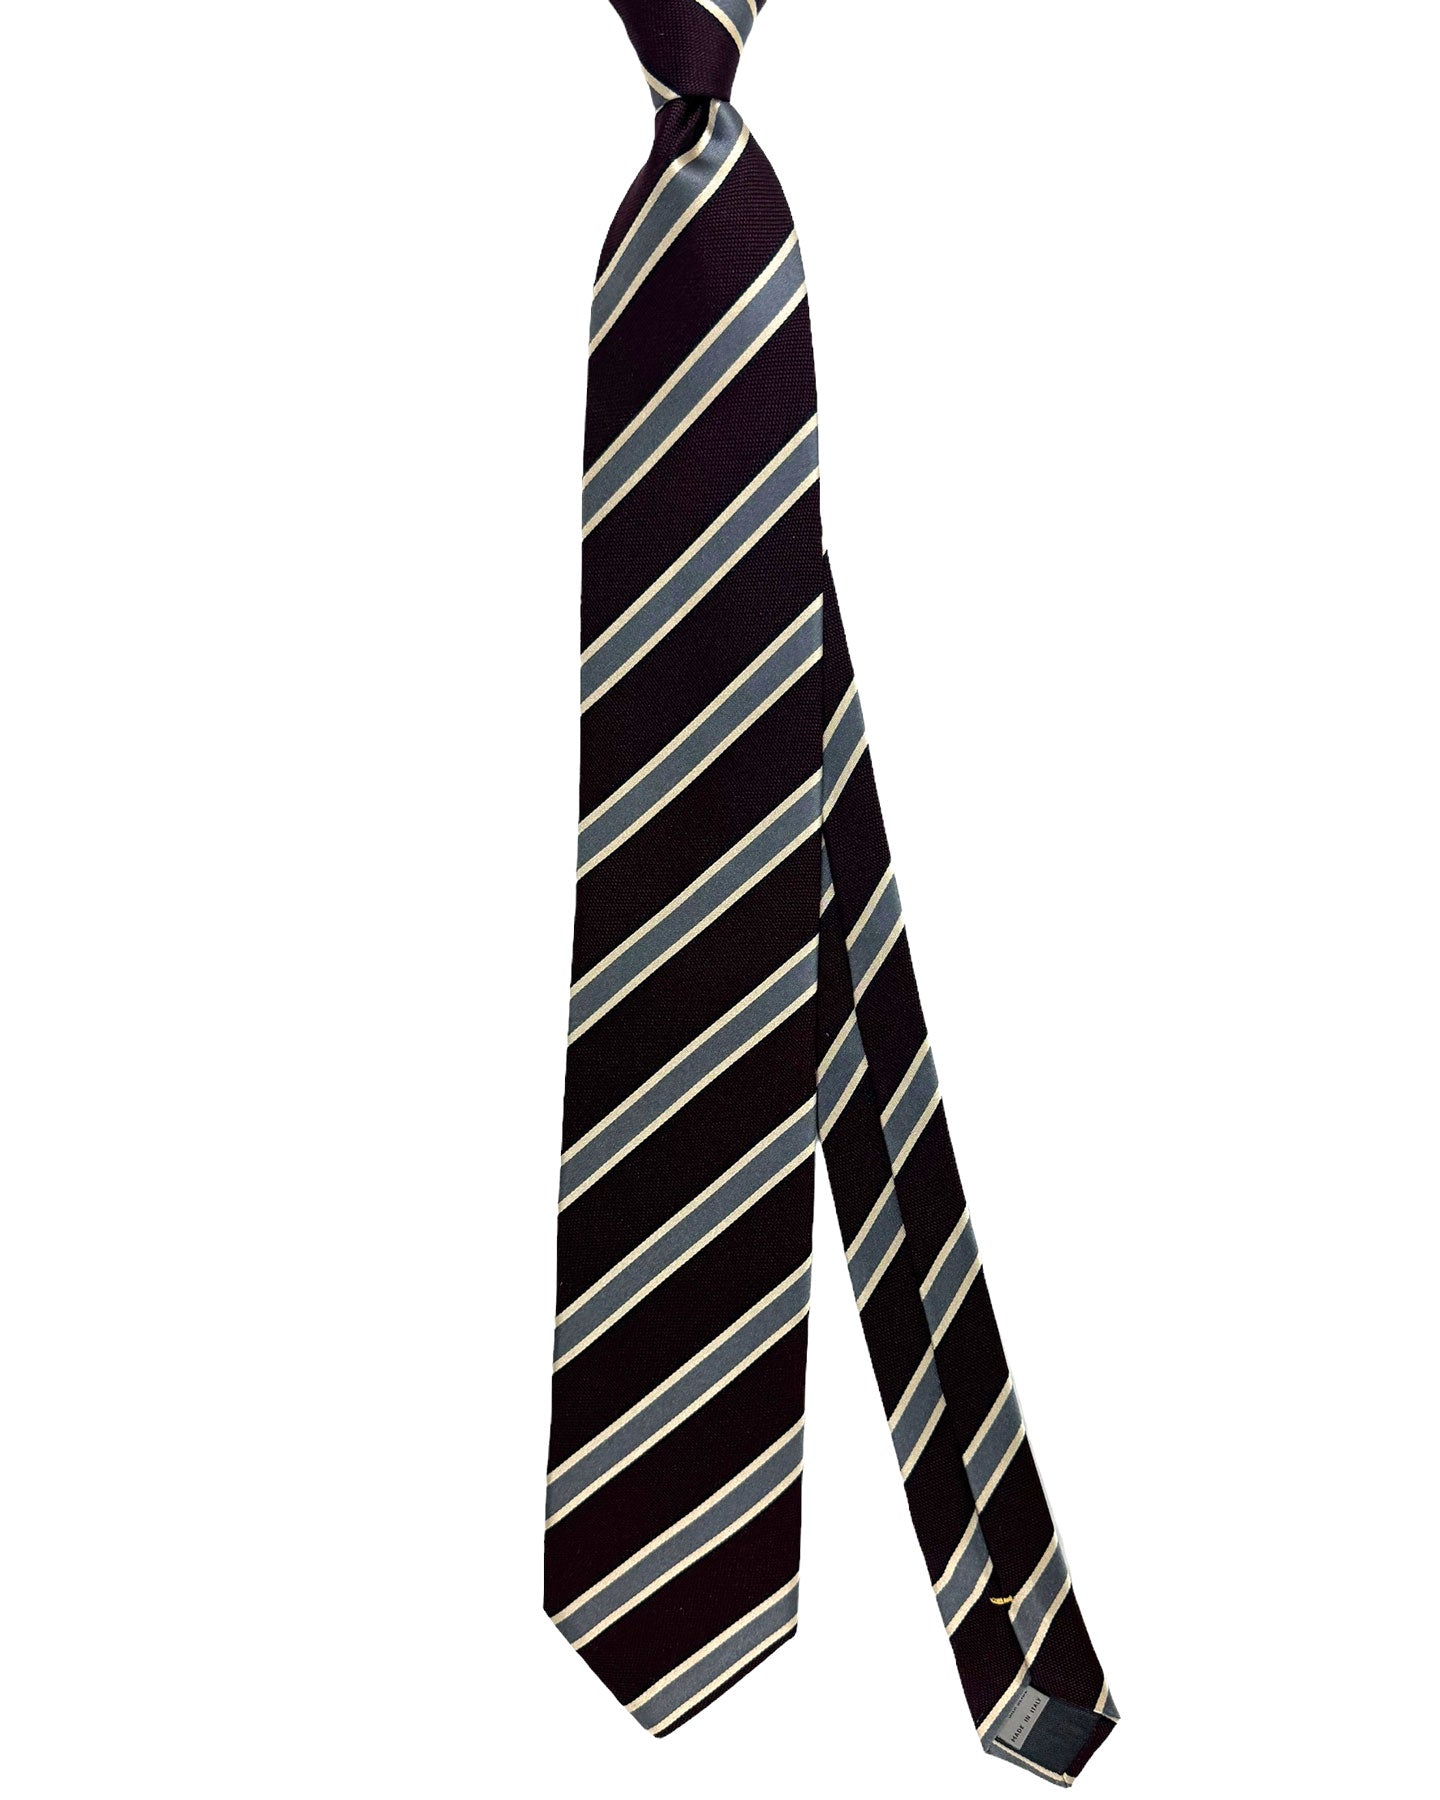 Canali Silk Tie Dark Brown Gray Stripes Pattern - Classic Italian